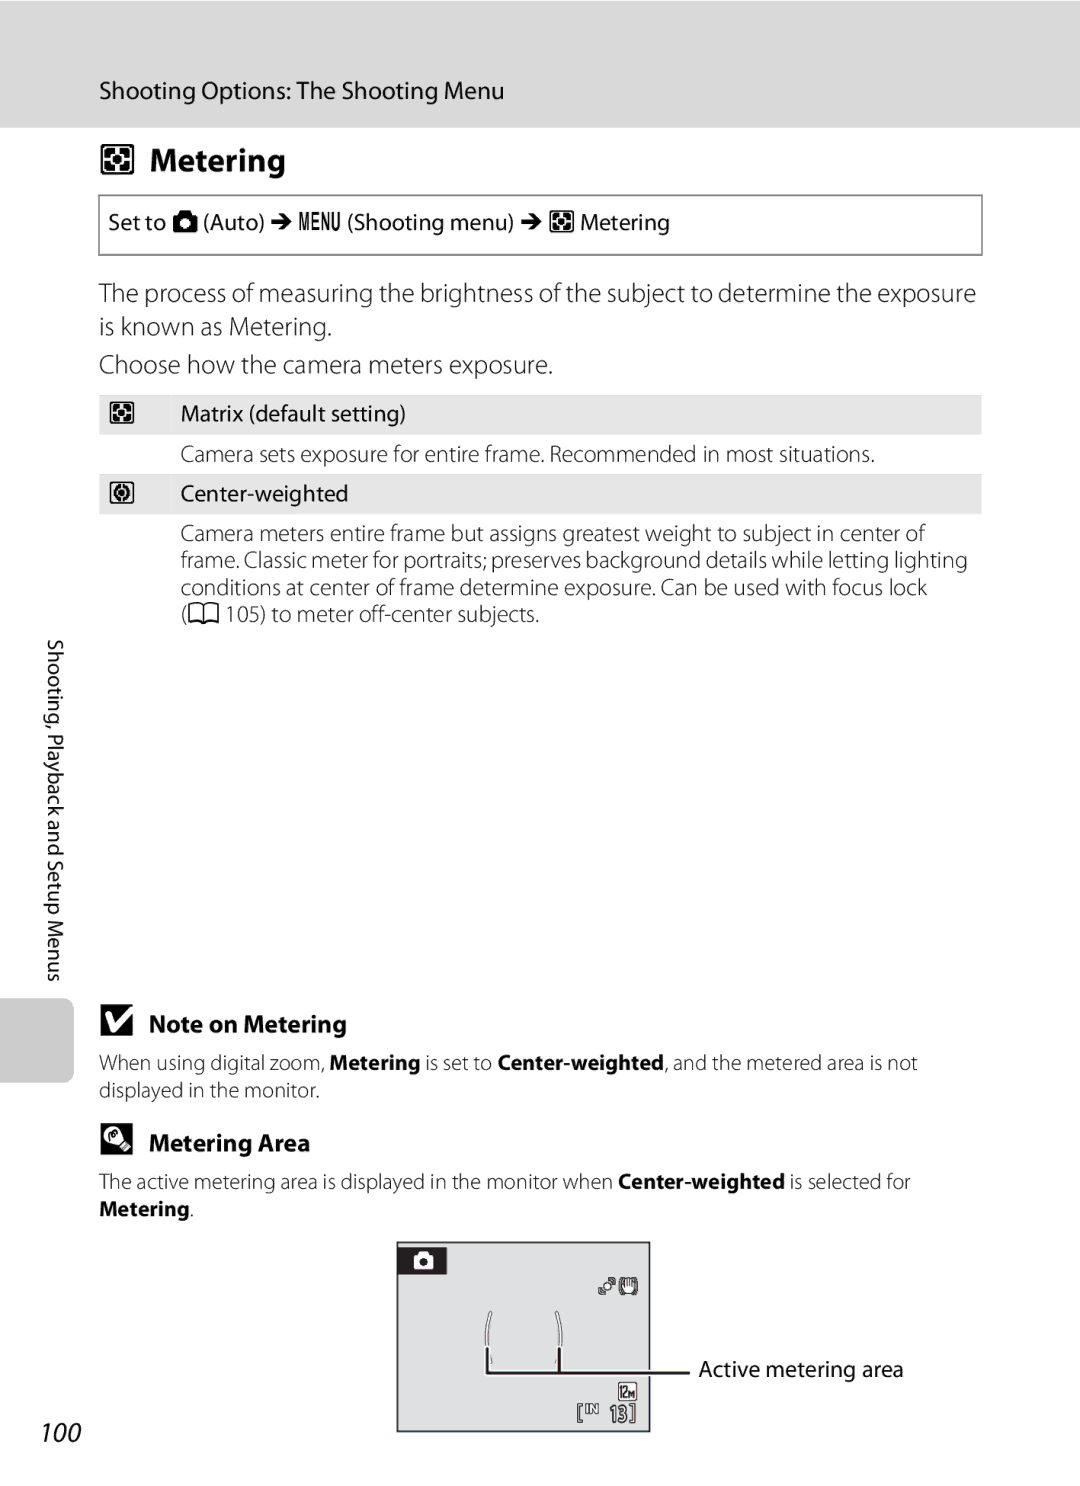 Nortel Networks S640 user manual 100, Metering Area, Set to AAuto Md Shooting menu M G Metering, Active metering area 